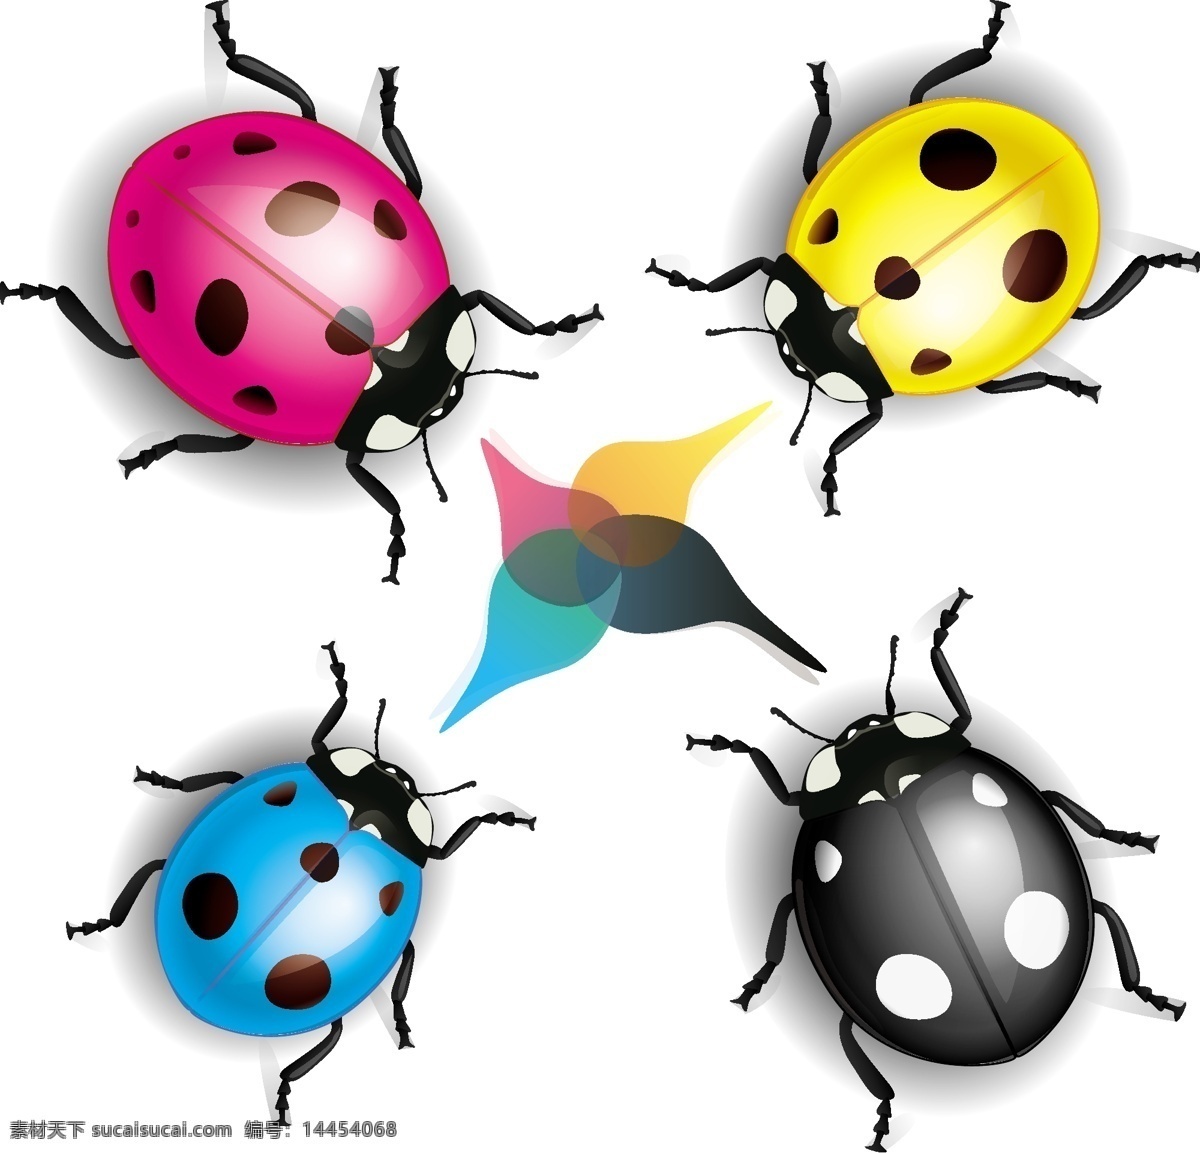 彩色 色彩 四种颜色 立体字母 色彩样品 昆虫 彩色瓢虫 瓢虫 生活百科 矢量素材 白色